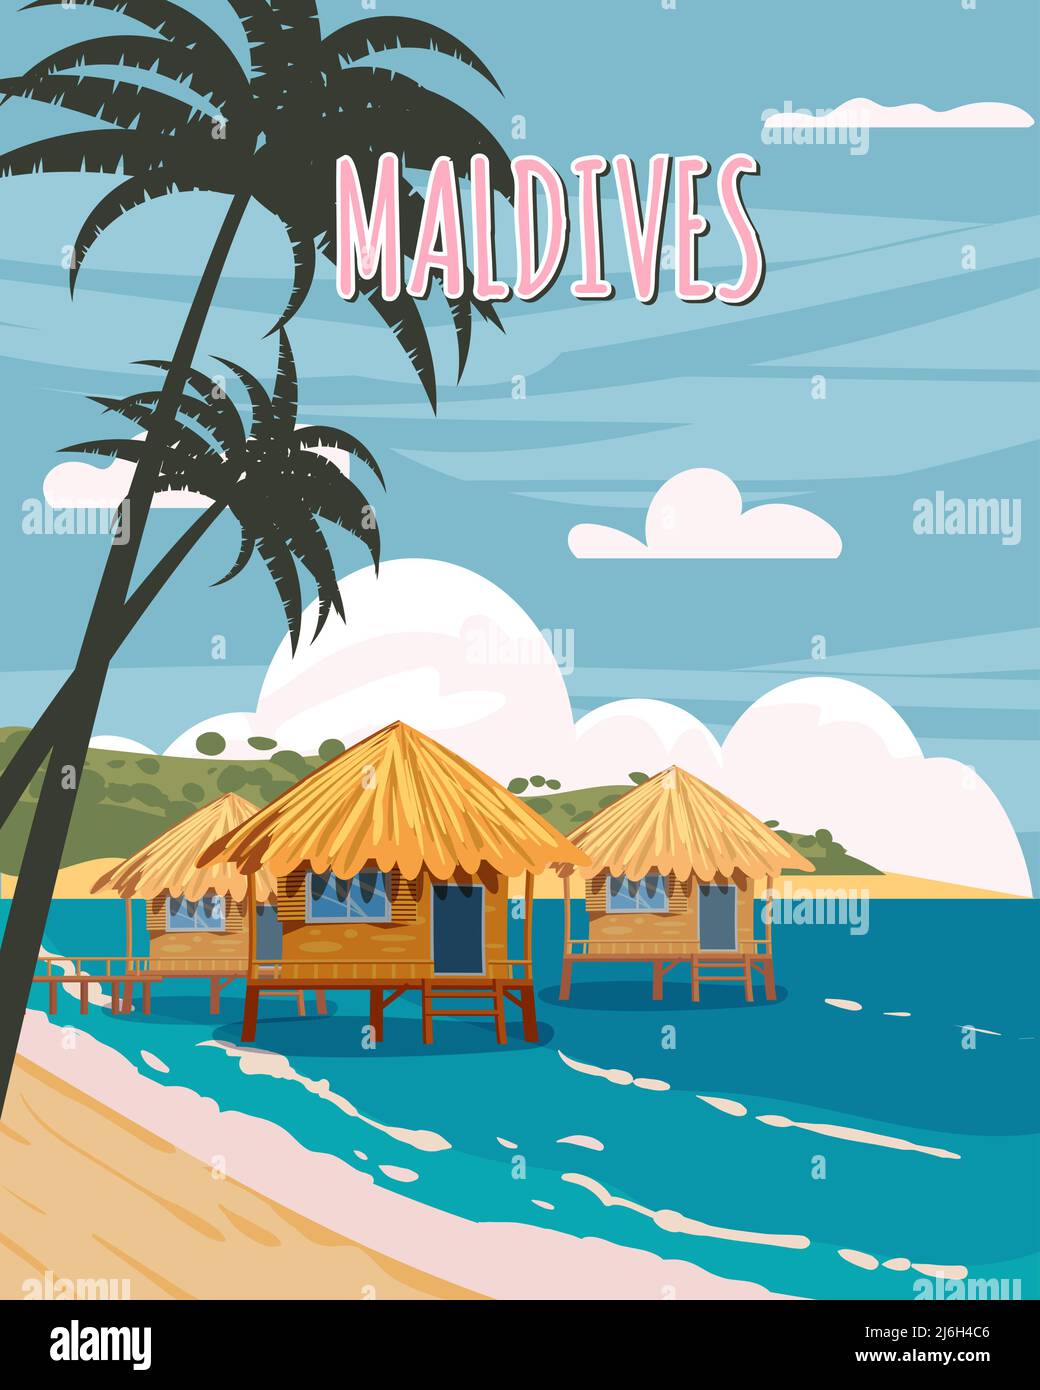 Maldive tropicale resort poster vintage. Spiaggia costa capanne tradizionali, palme, oceano. Vettore di illustrazione stile retrò Illustrazione Vettoriale